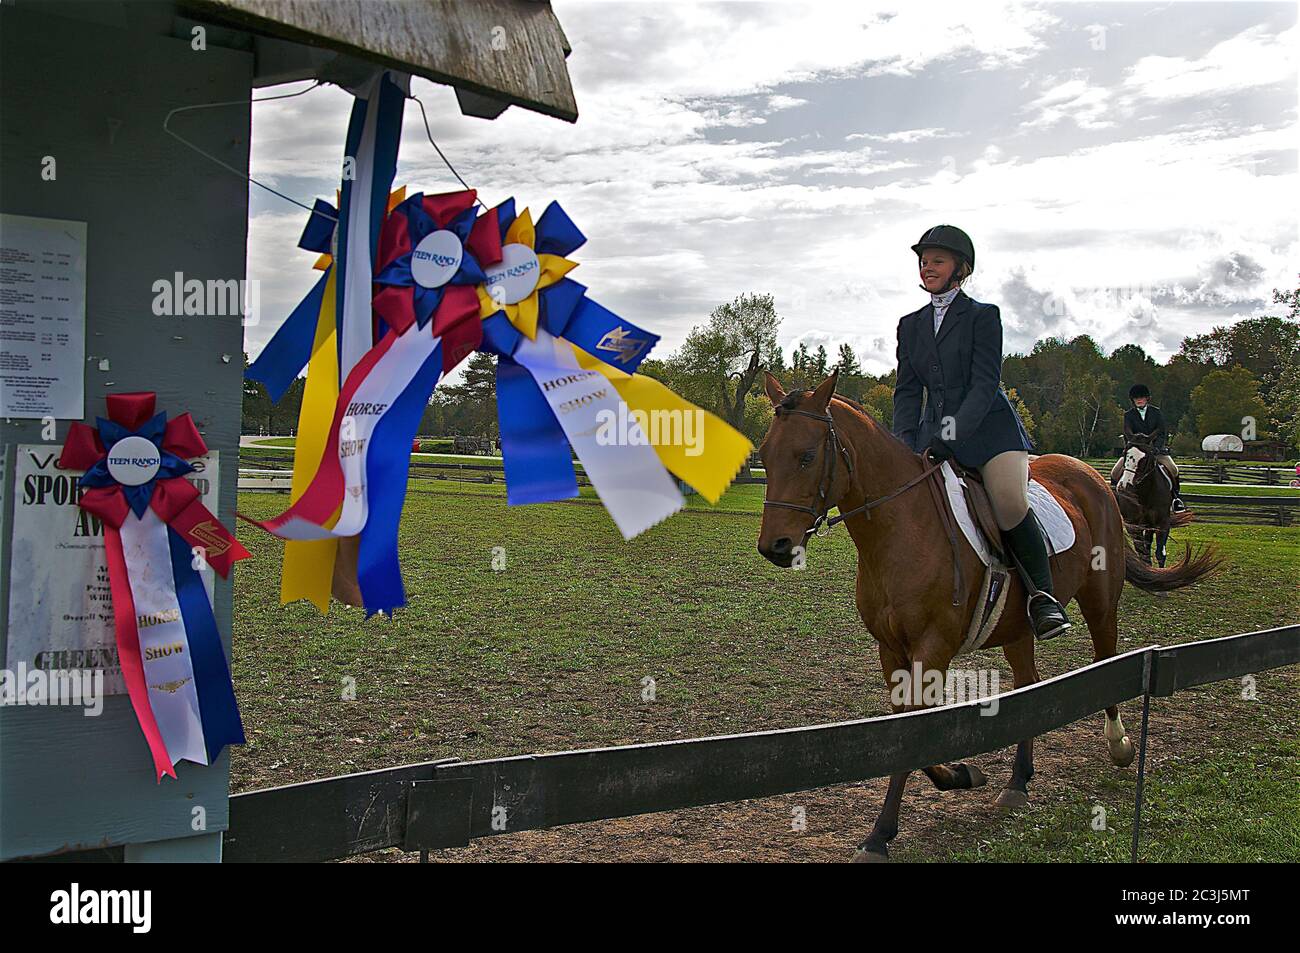 Orangeville, Ontario / Canadá - 10/03/2009: Cinta de premio para un evento ecuestre con montar el caballo deportivo durante el espectáculo de doma Foto de stock